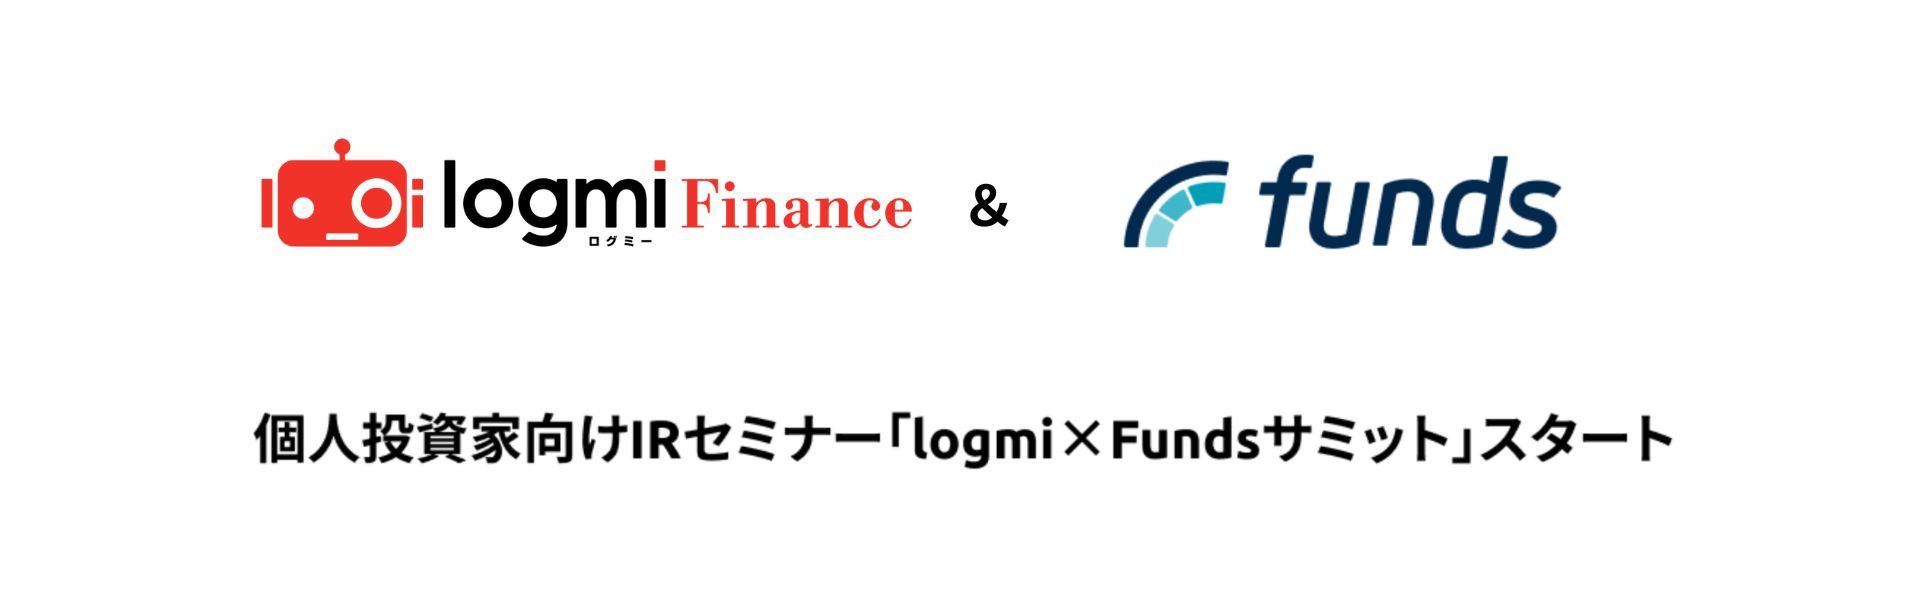 個人投資家向けIRセミナー「logmi×Fundsサミット」を開始